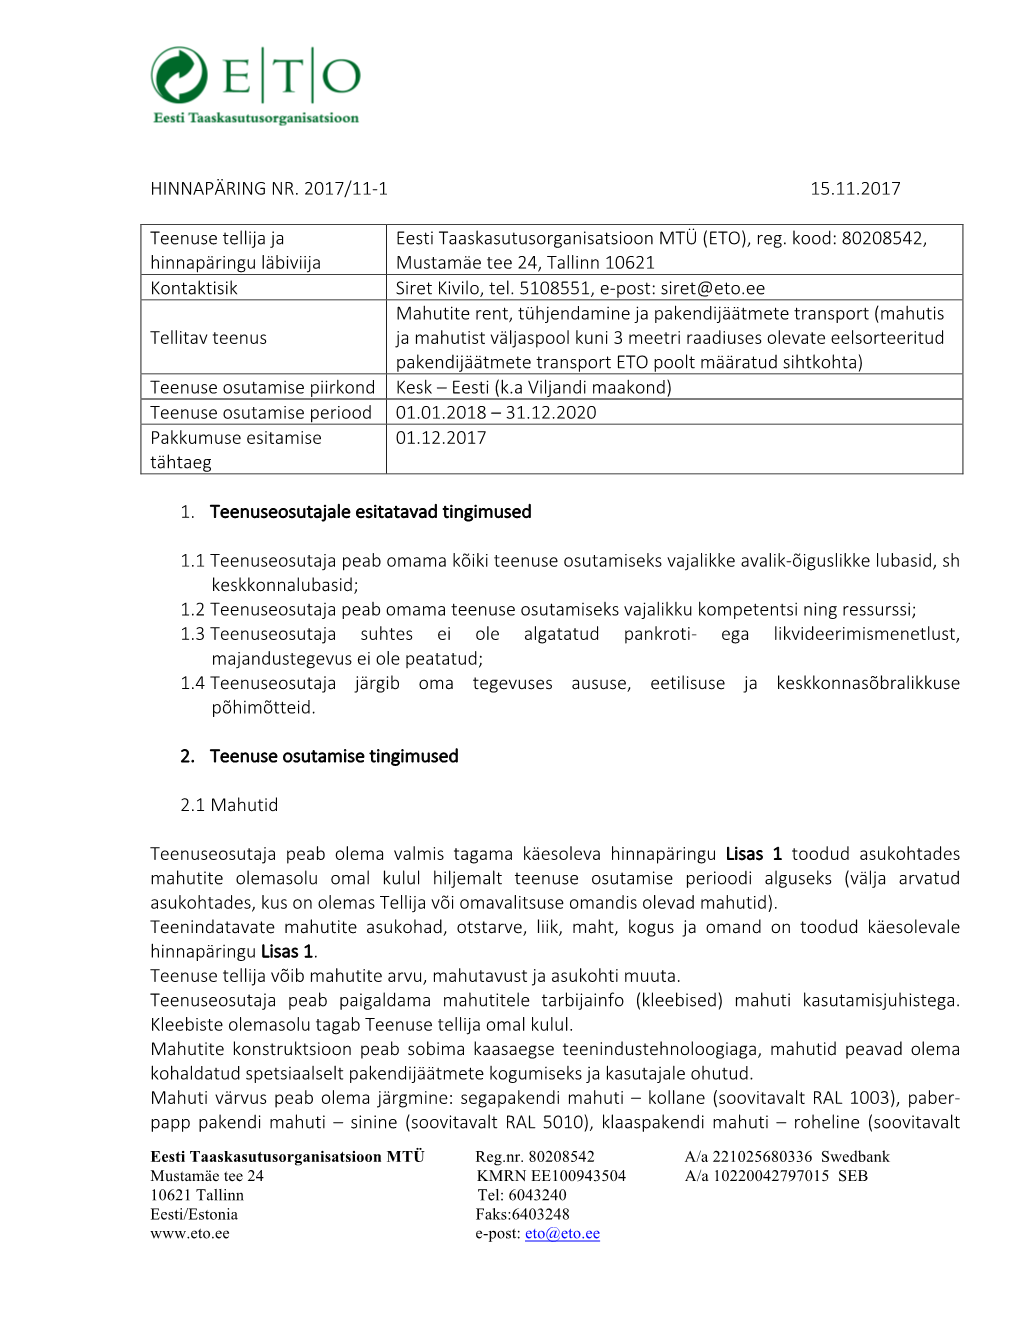 Eesti Taaskasutusorganisatsioon MTÜ (ETO), Reg